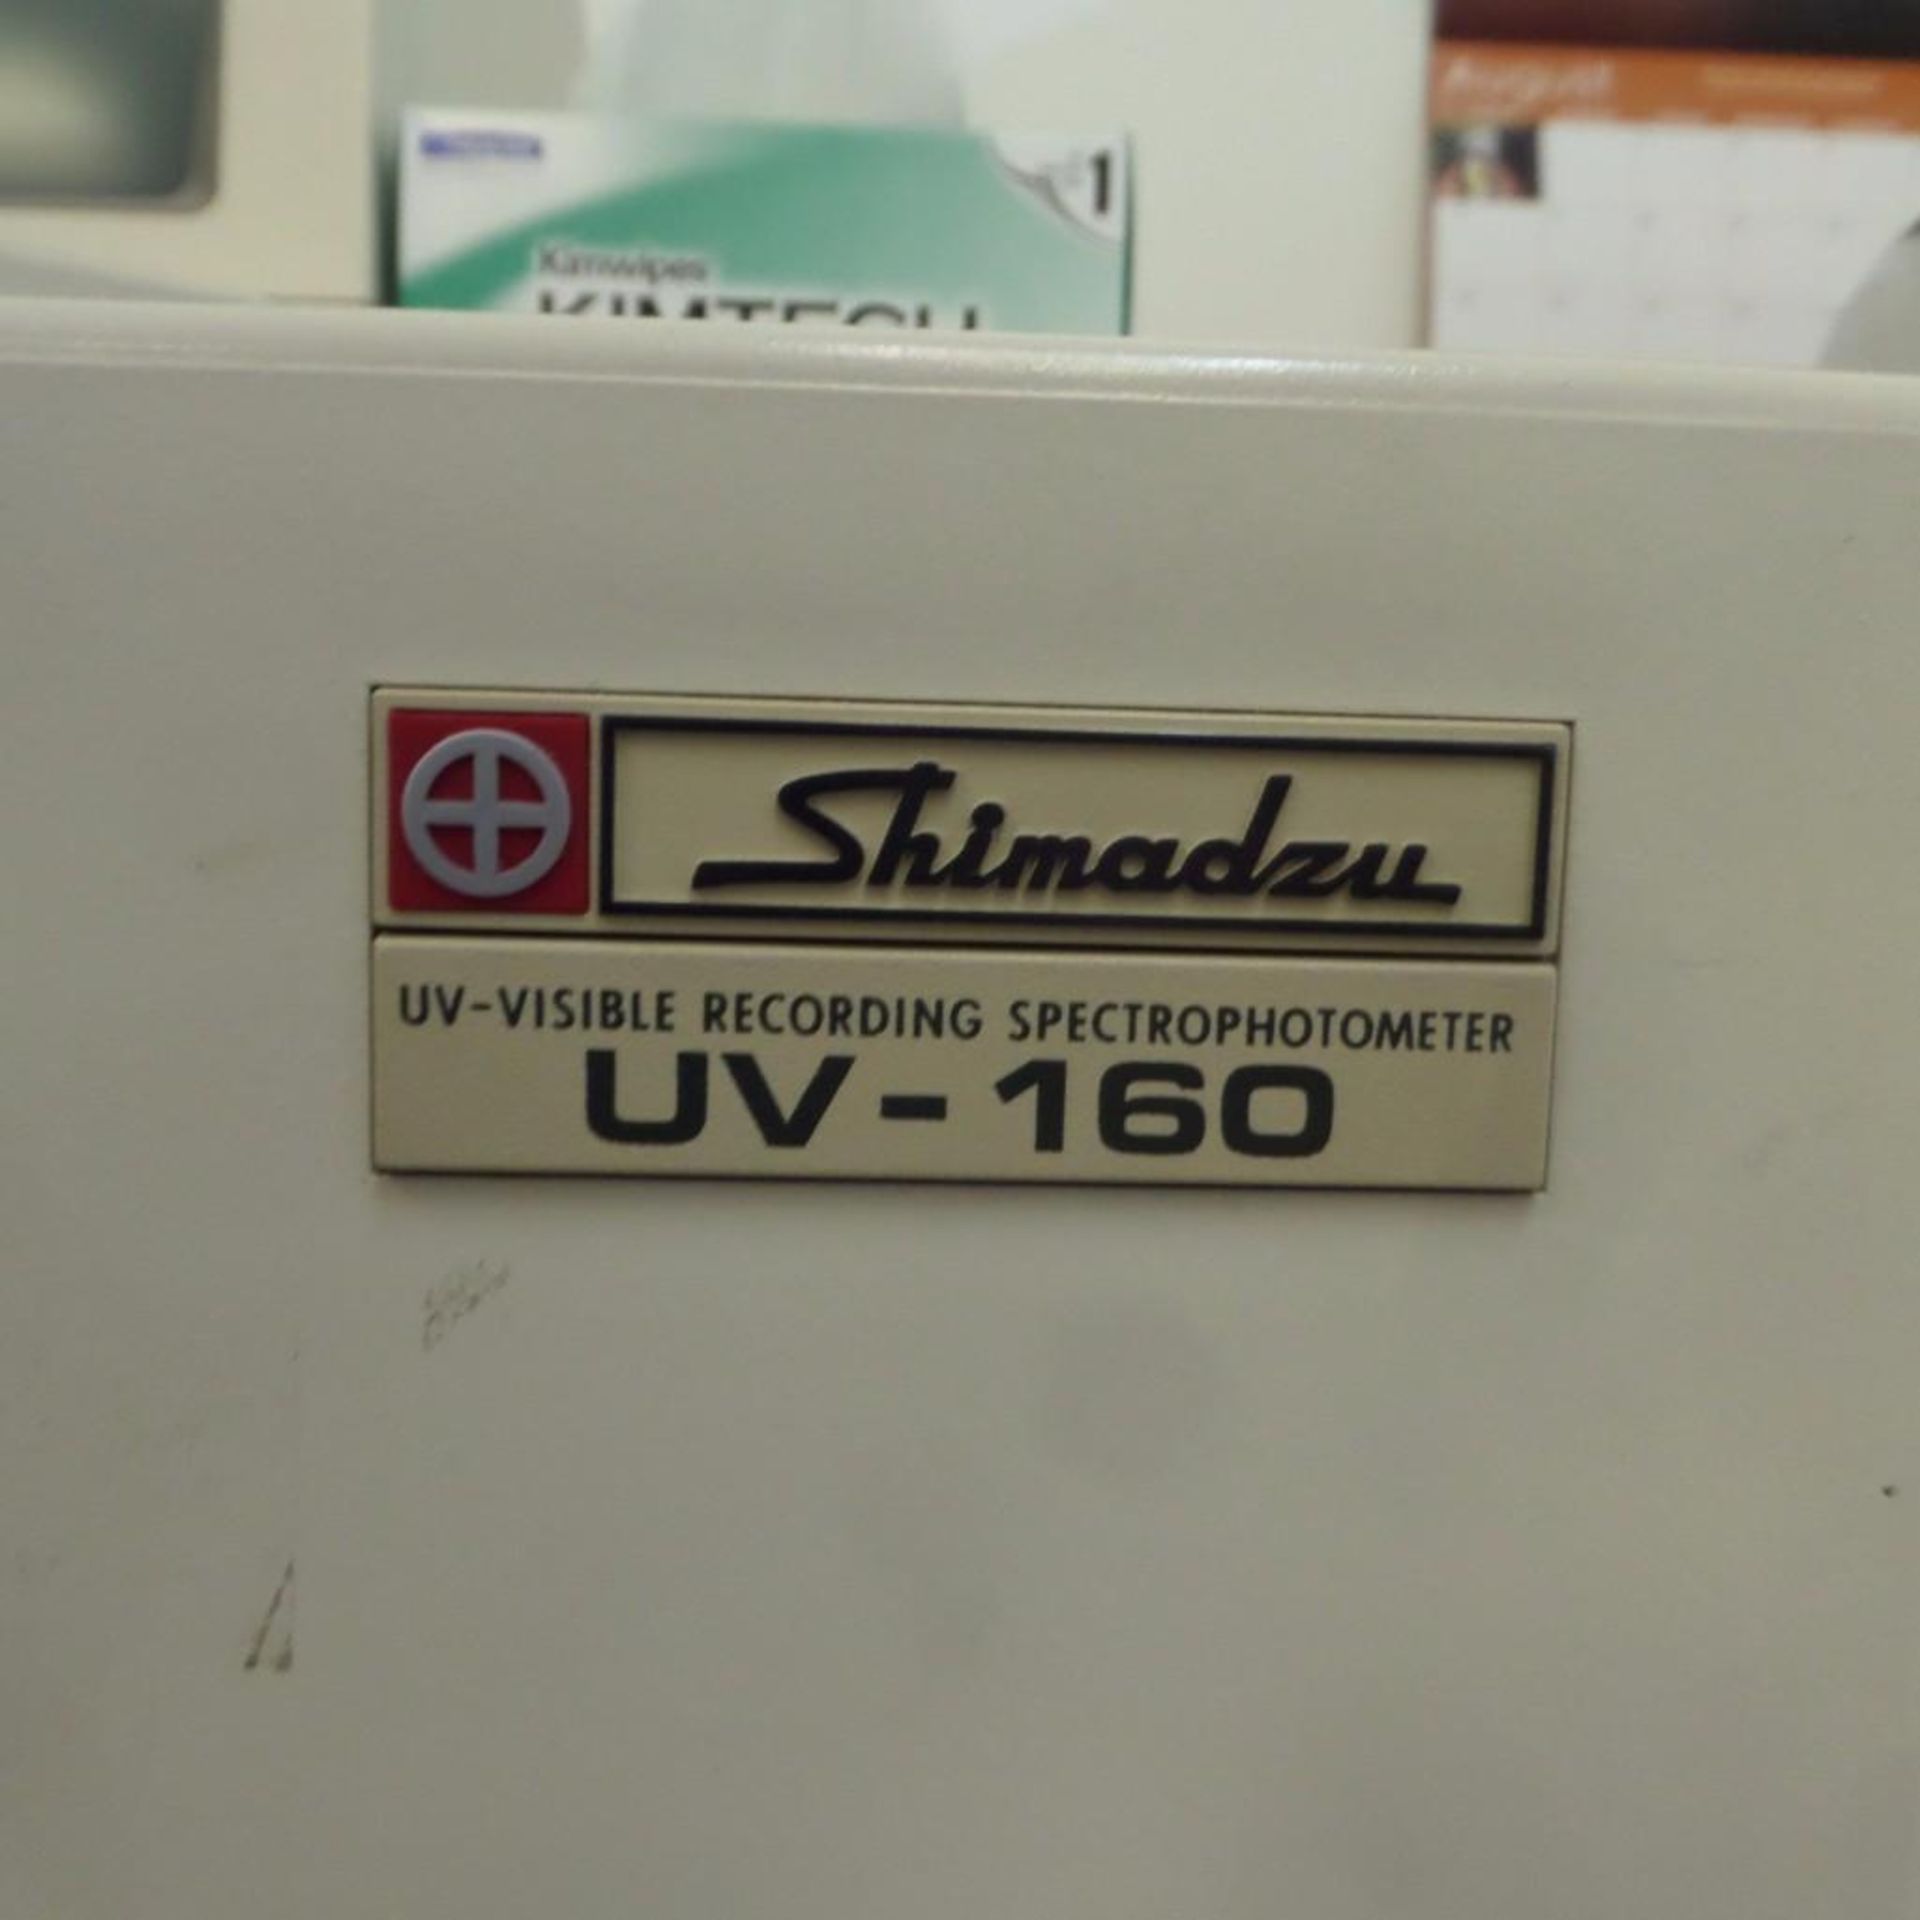 Shimazdu UV-160 - Image 2 of 3